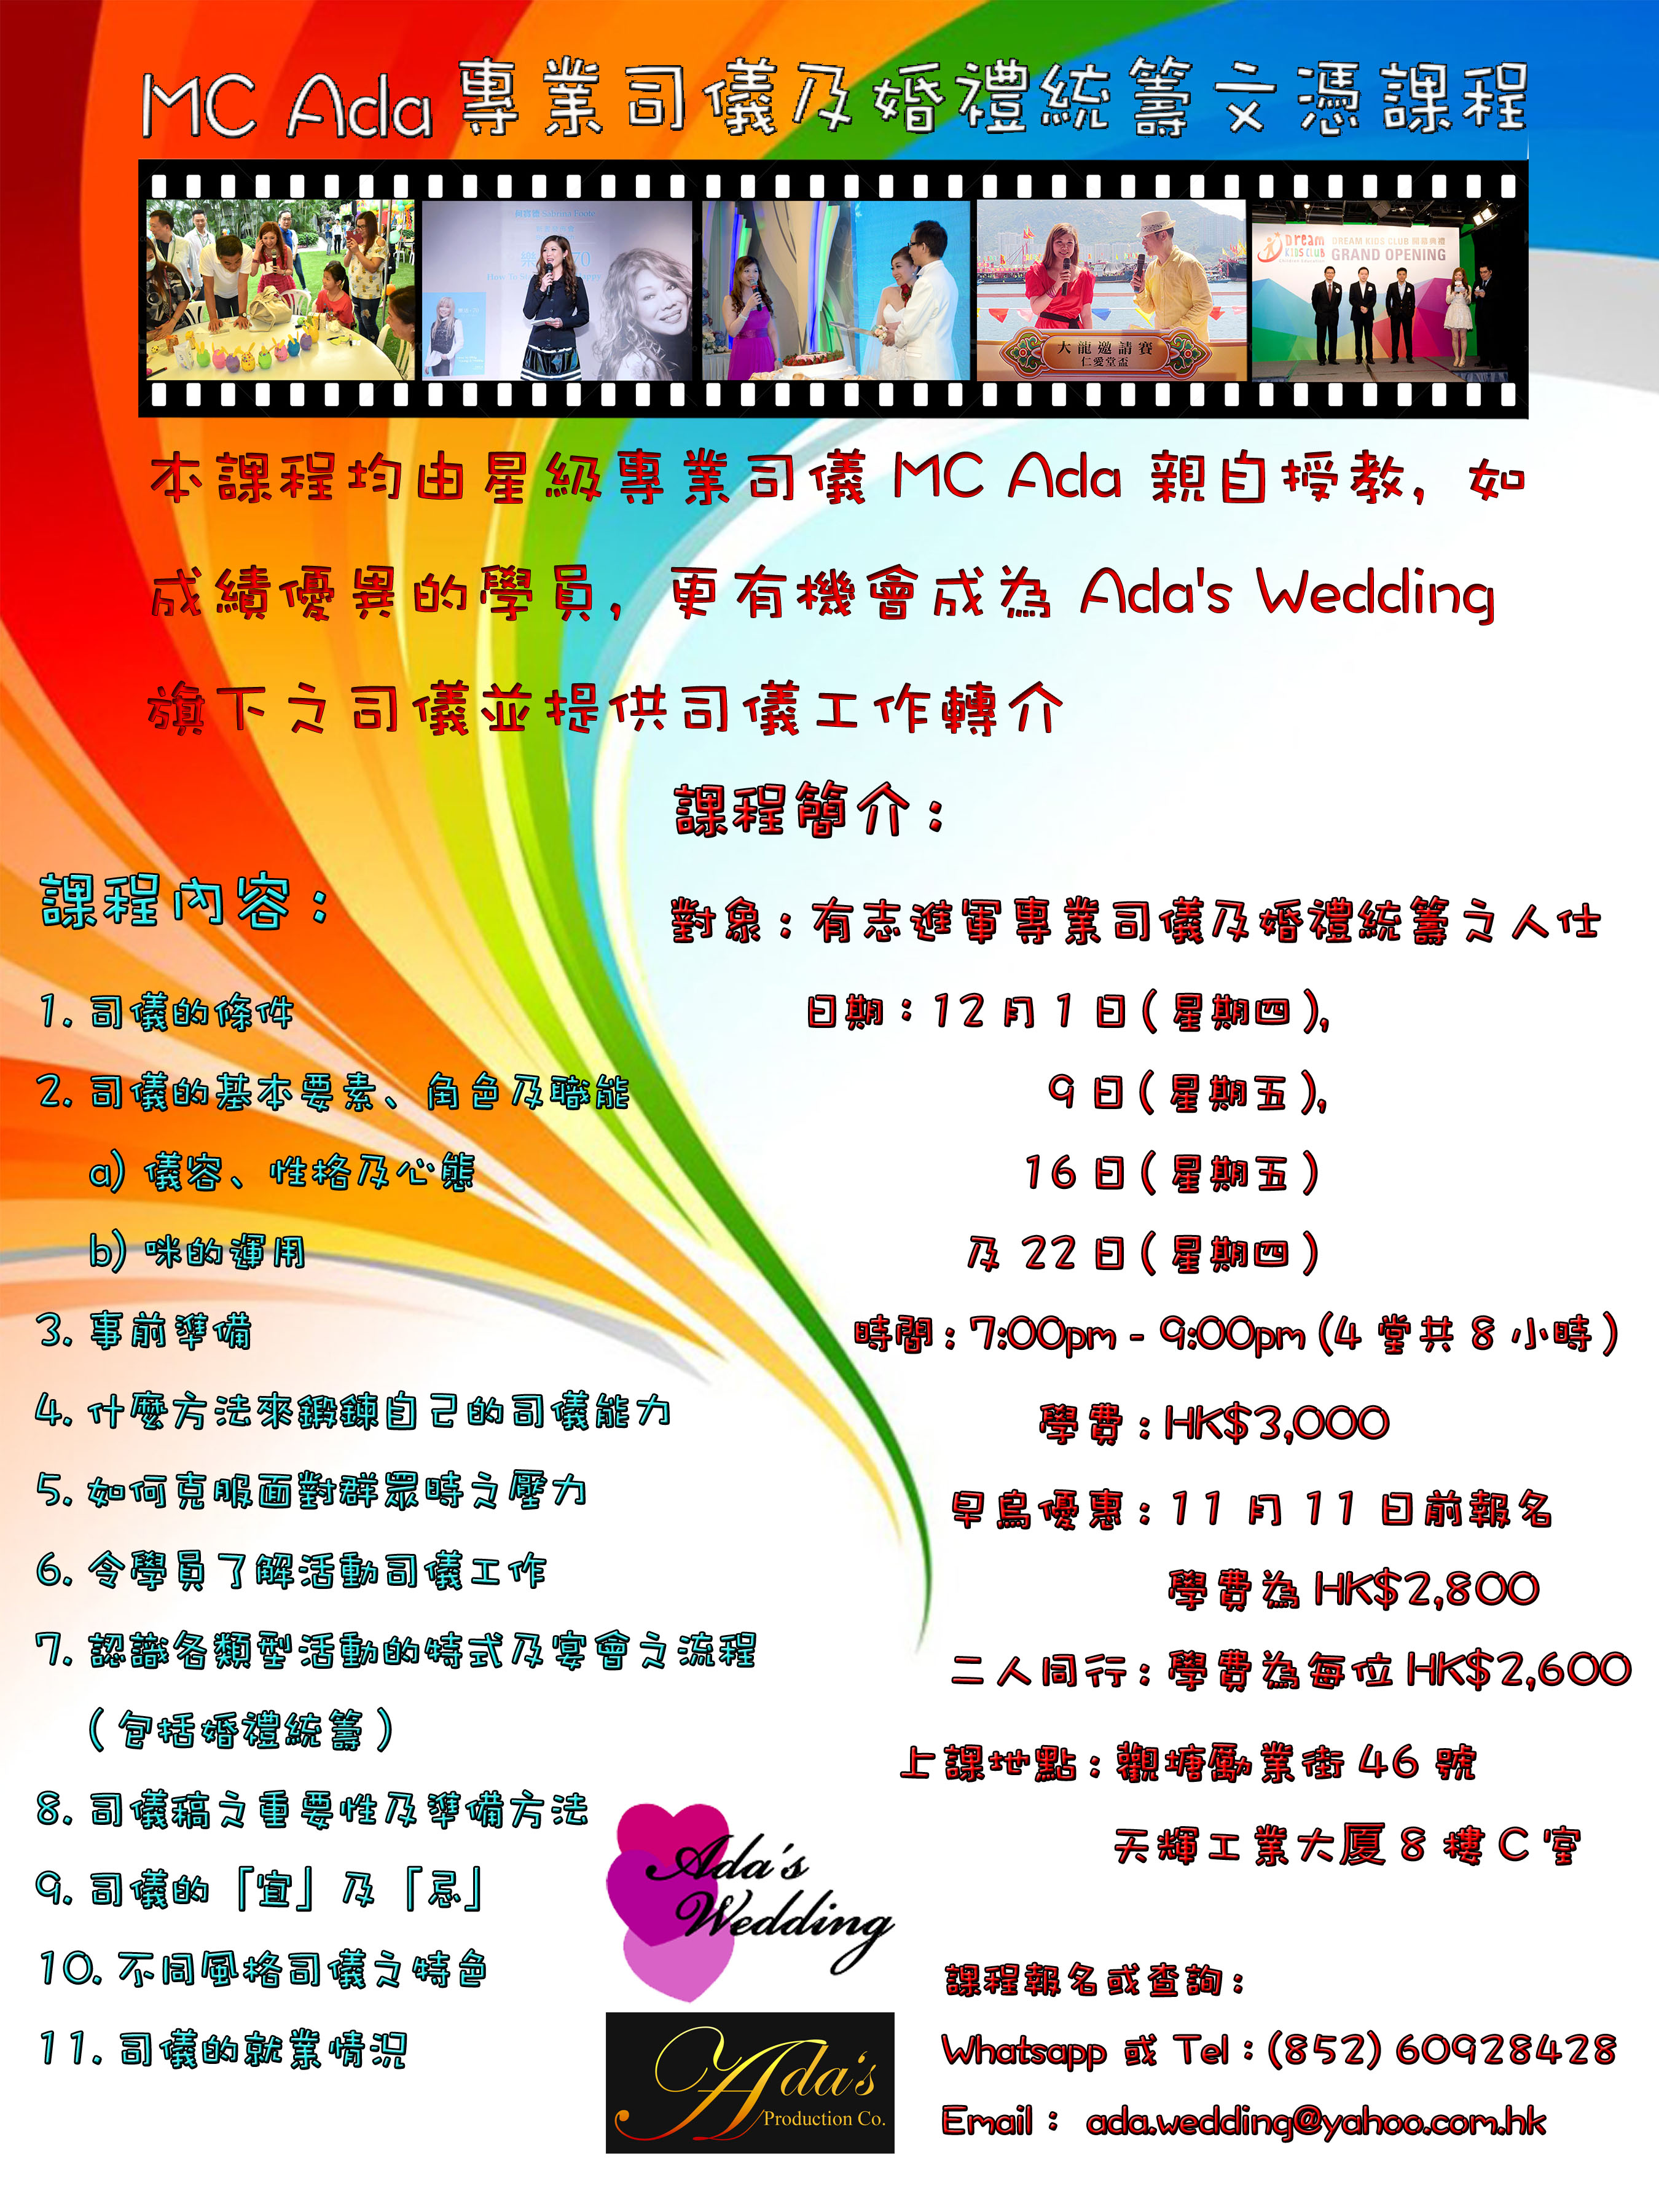 婚禮統籌師之婚禮統籌師訓練課程: 12月份的司儀及婚禮統籌課程